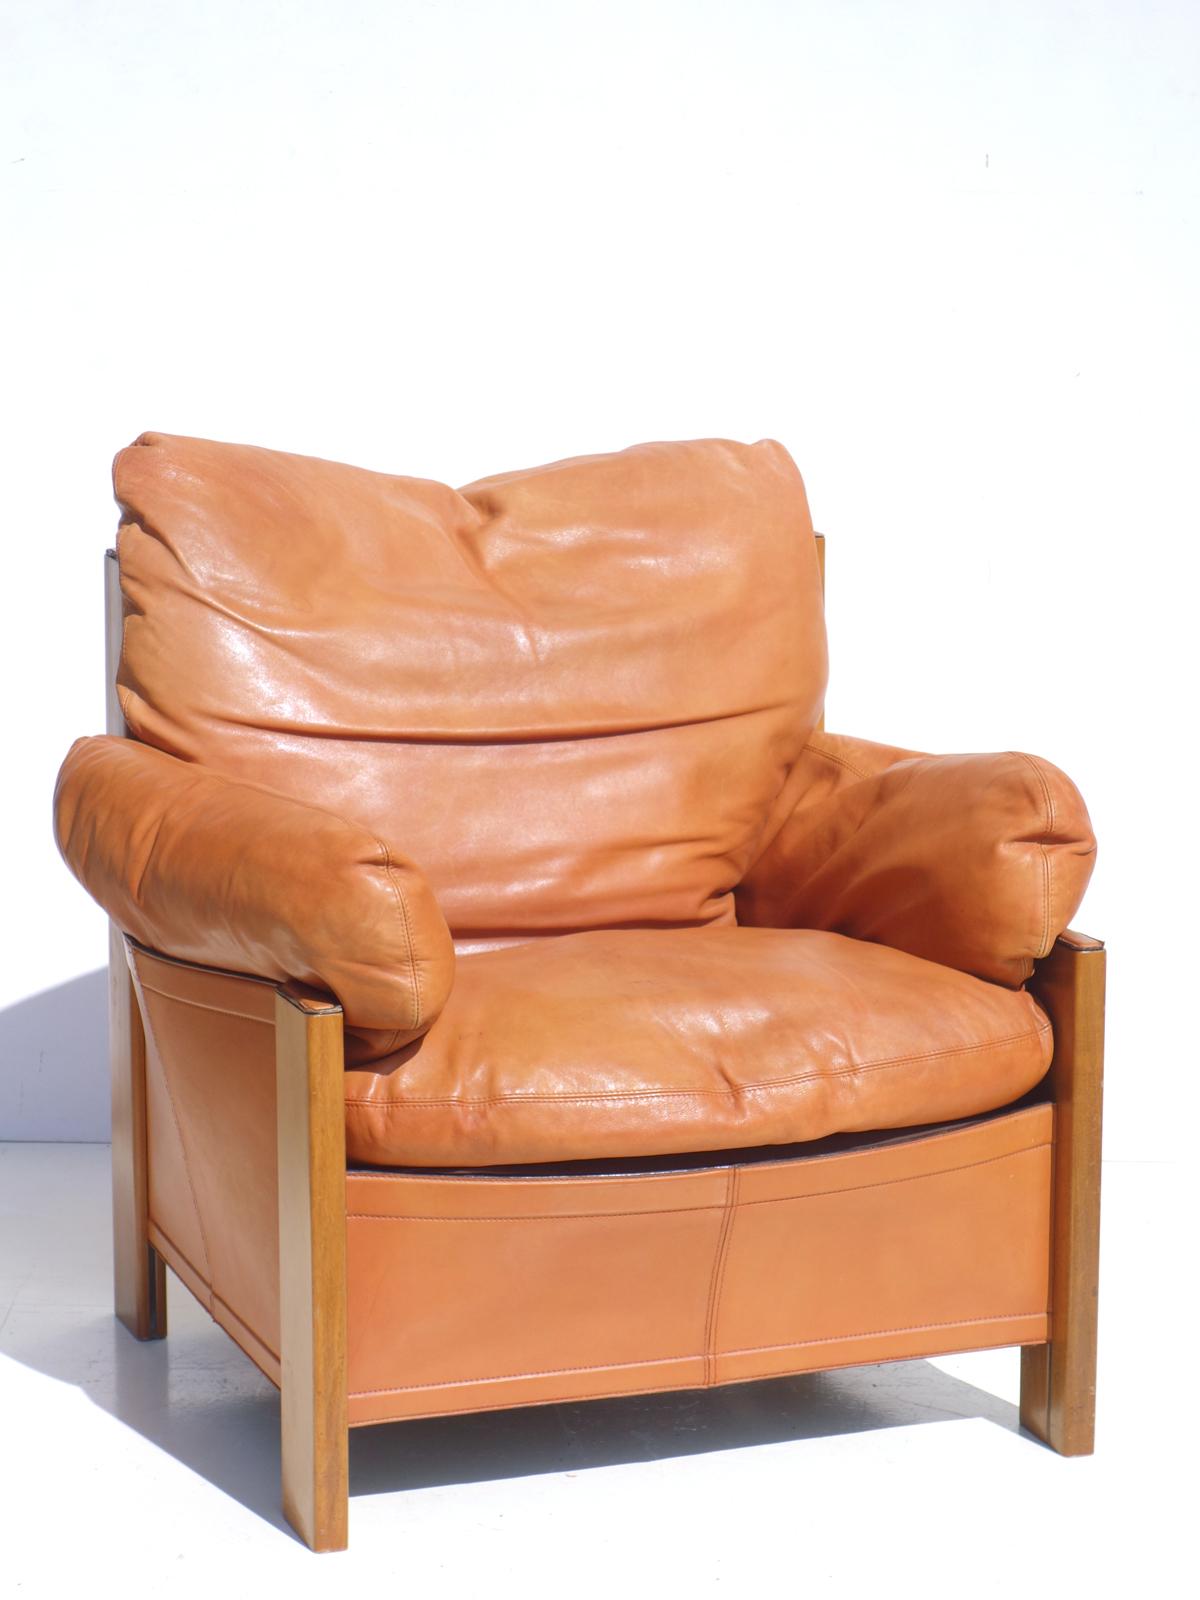 Rare fauteuil Berger en cuir avec ottoman
Collection S pour Maxalto, 1975
Noyer et cuir.
Le cuir a une belle patine.

Mesures : Fauteuil H 85 x L 80 x P 78 cm
Pouf H 48 x L 79 x P 49 cm.